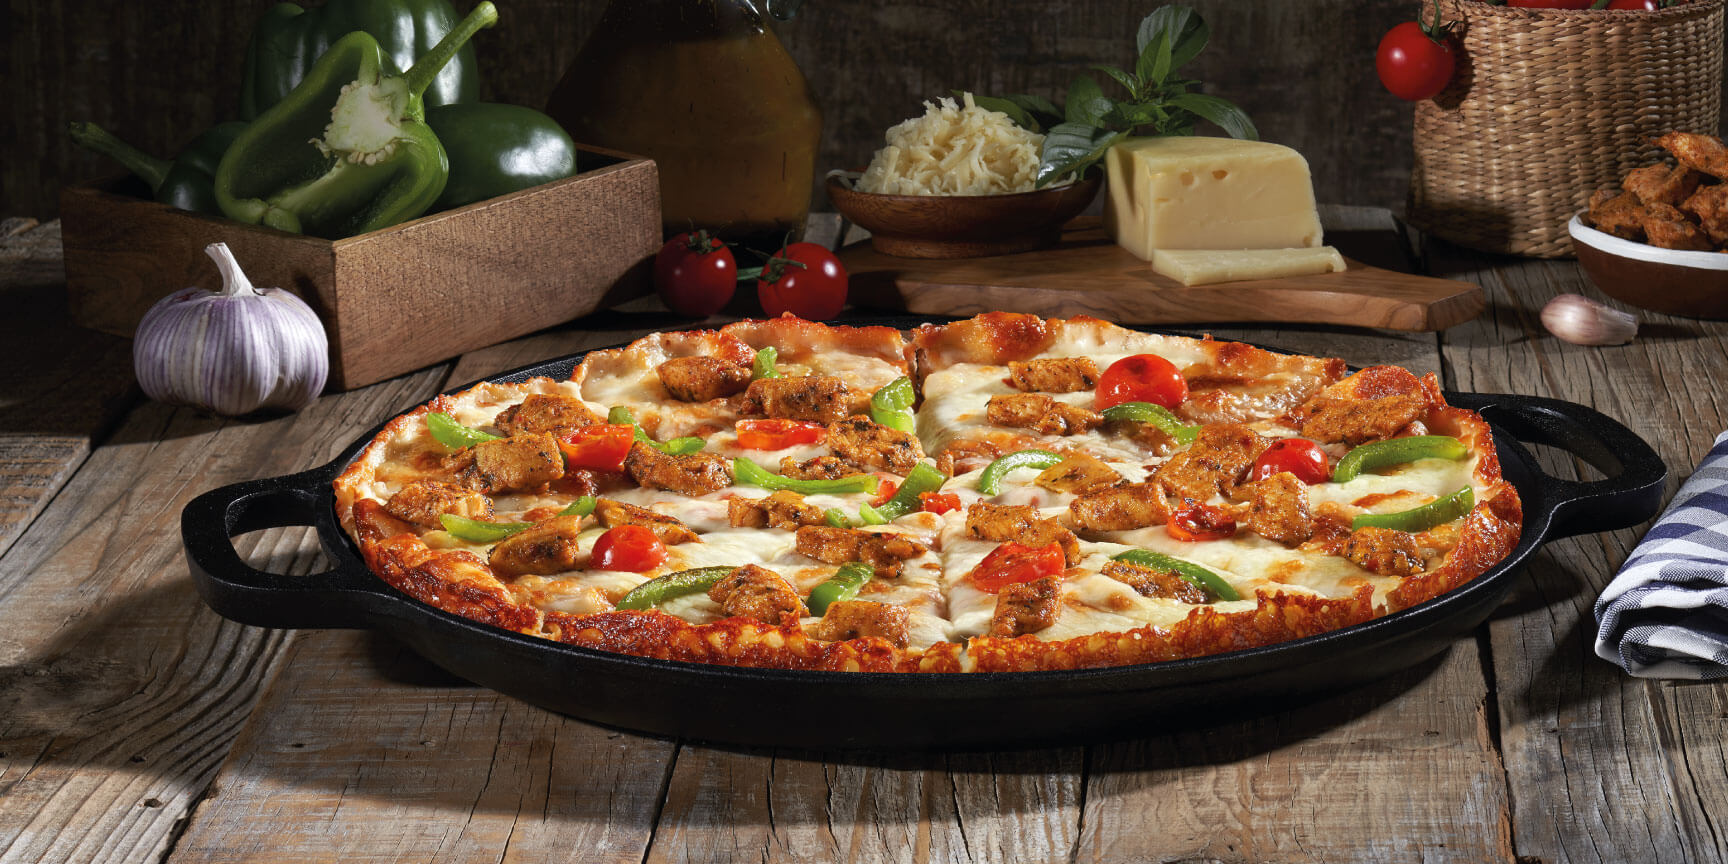 Pizza con pollo pimiento verde y masa artesanal | Italianni's